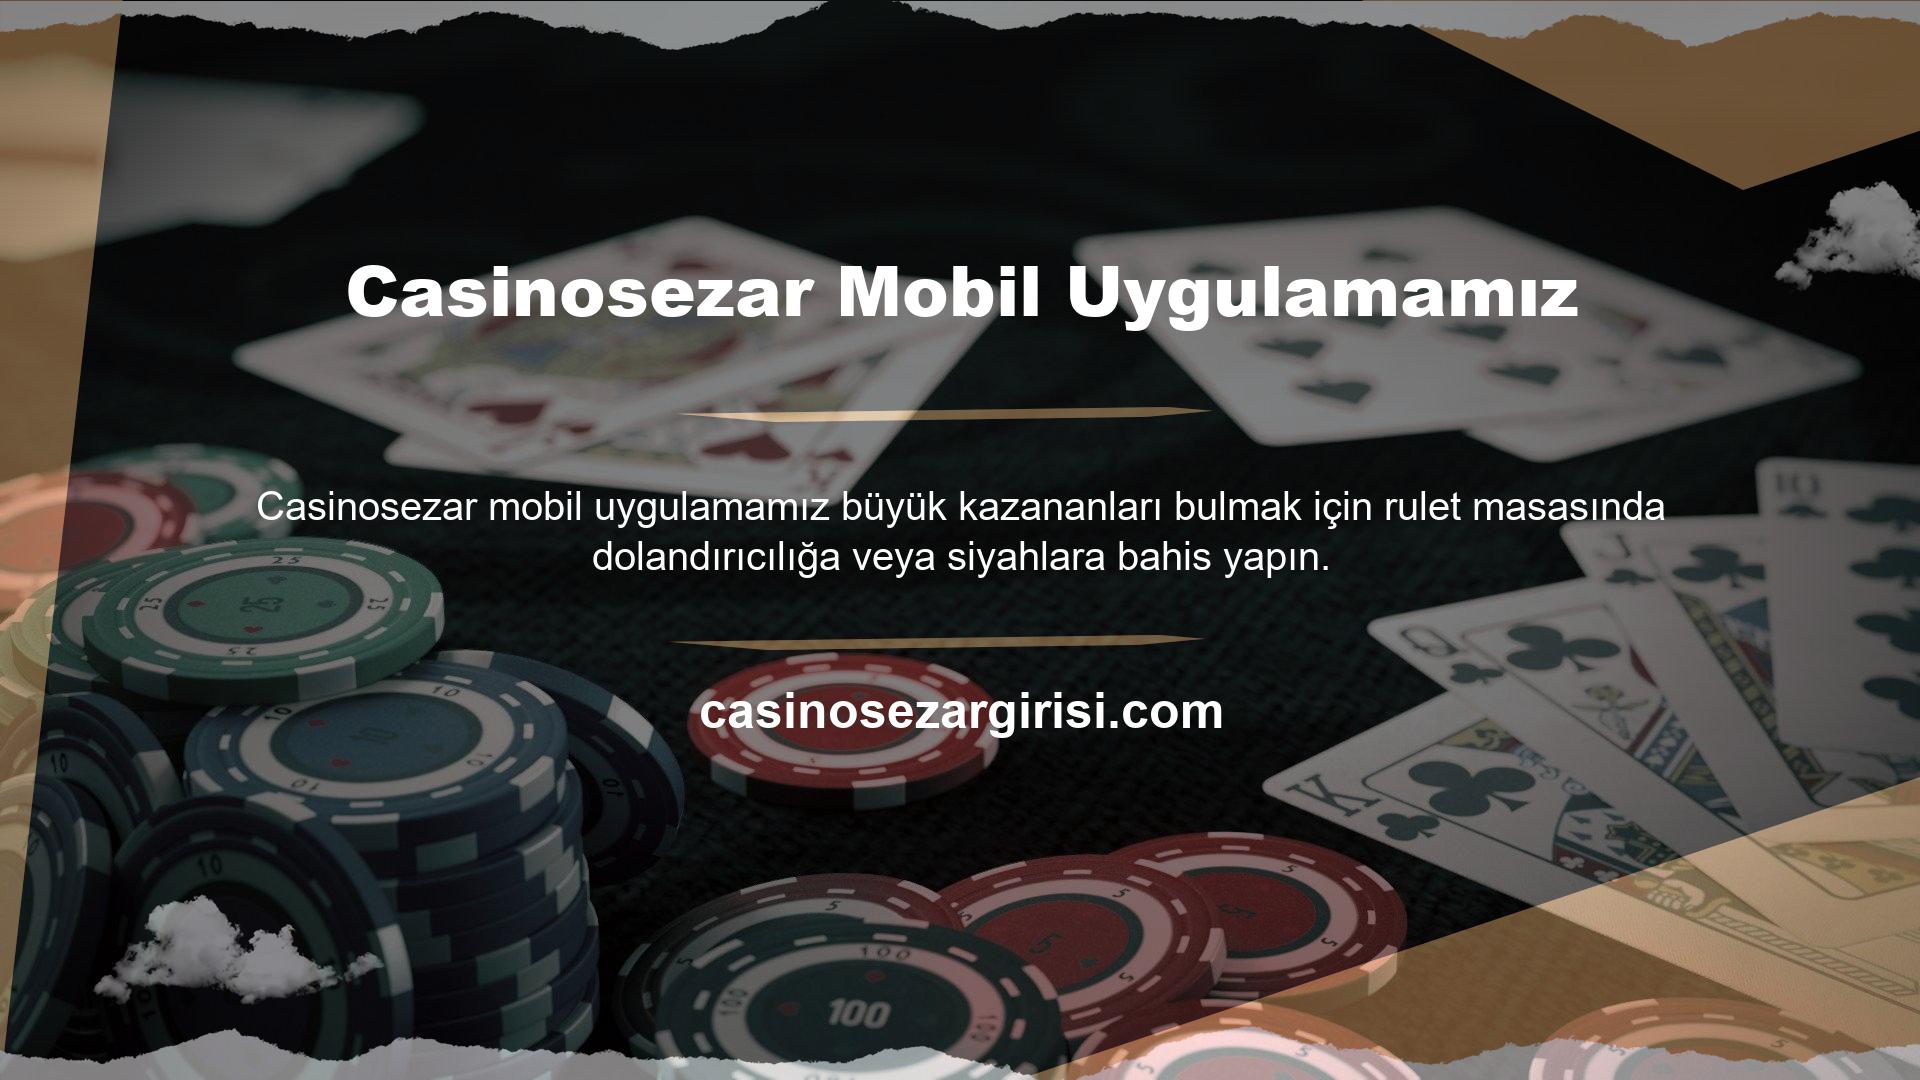 Müşteriler Casino de Monte-Carlo veya Hipodrom atmosferini bilgisayar veya telefon aracılığıyla deneyimleyebilmektedir